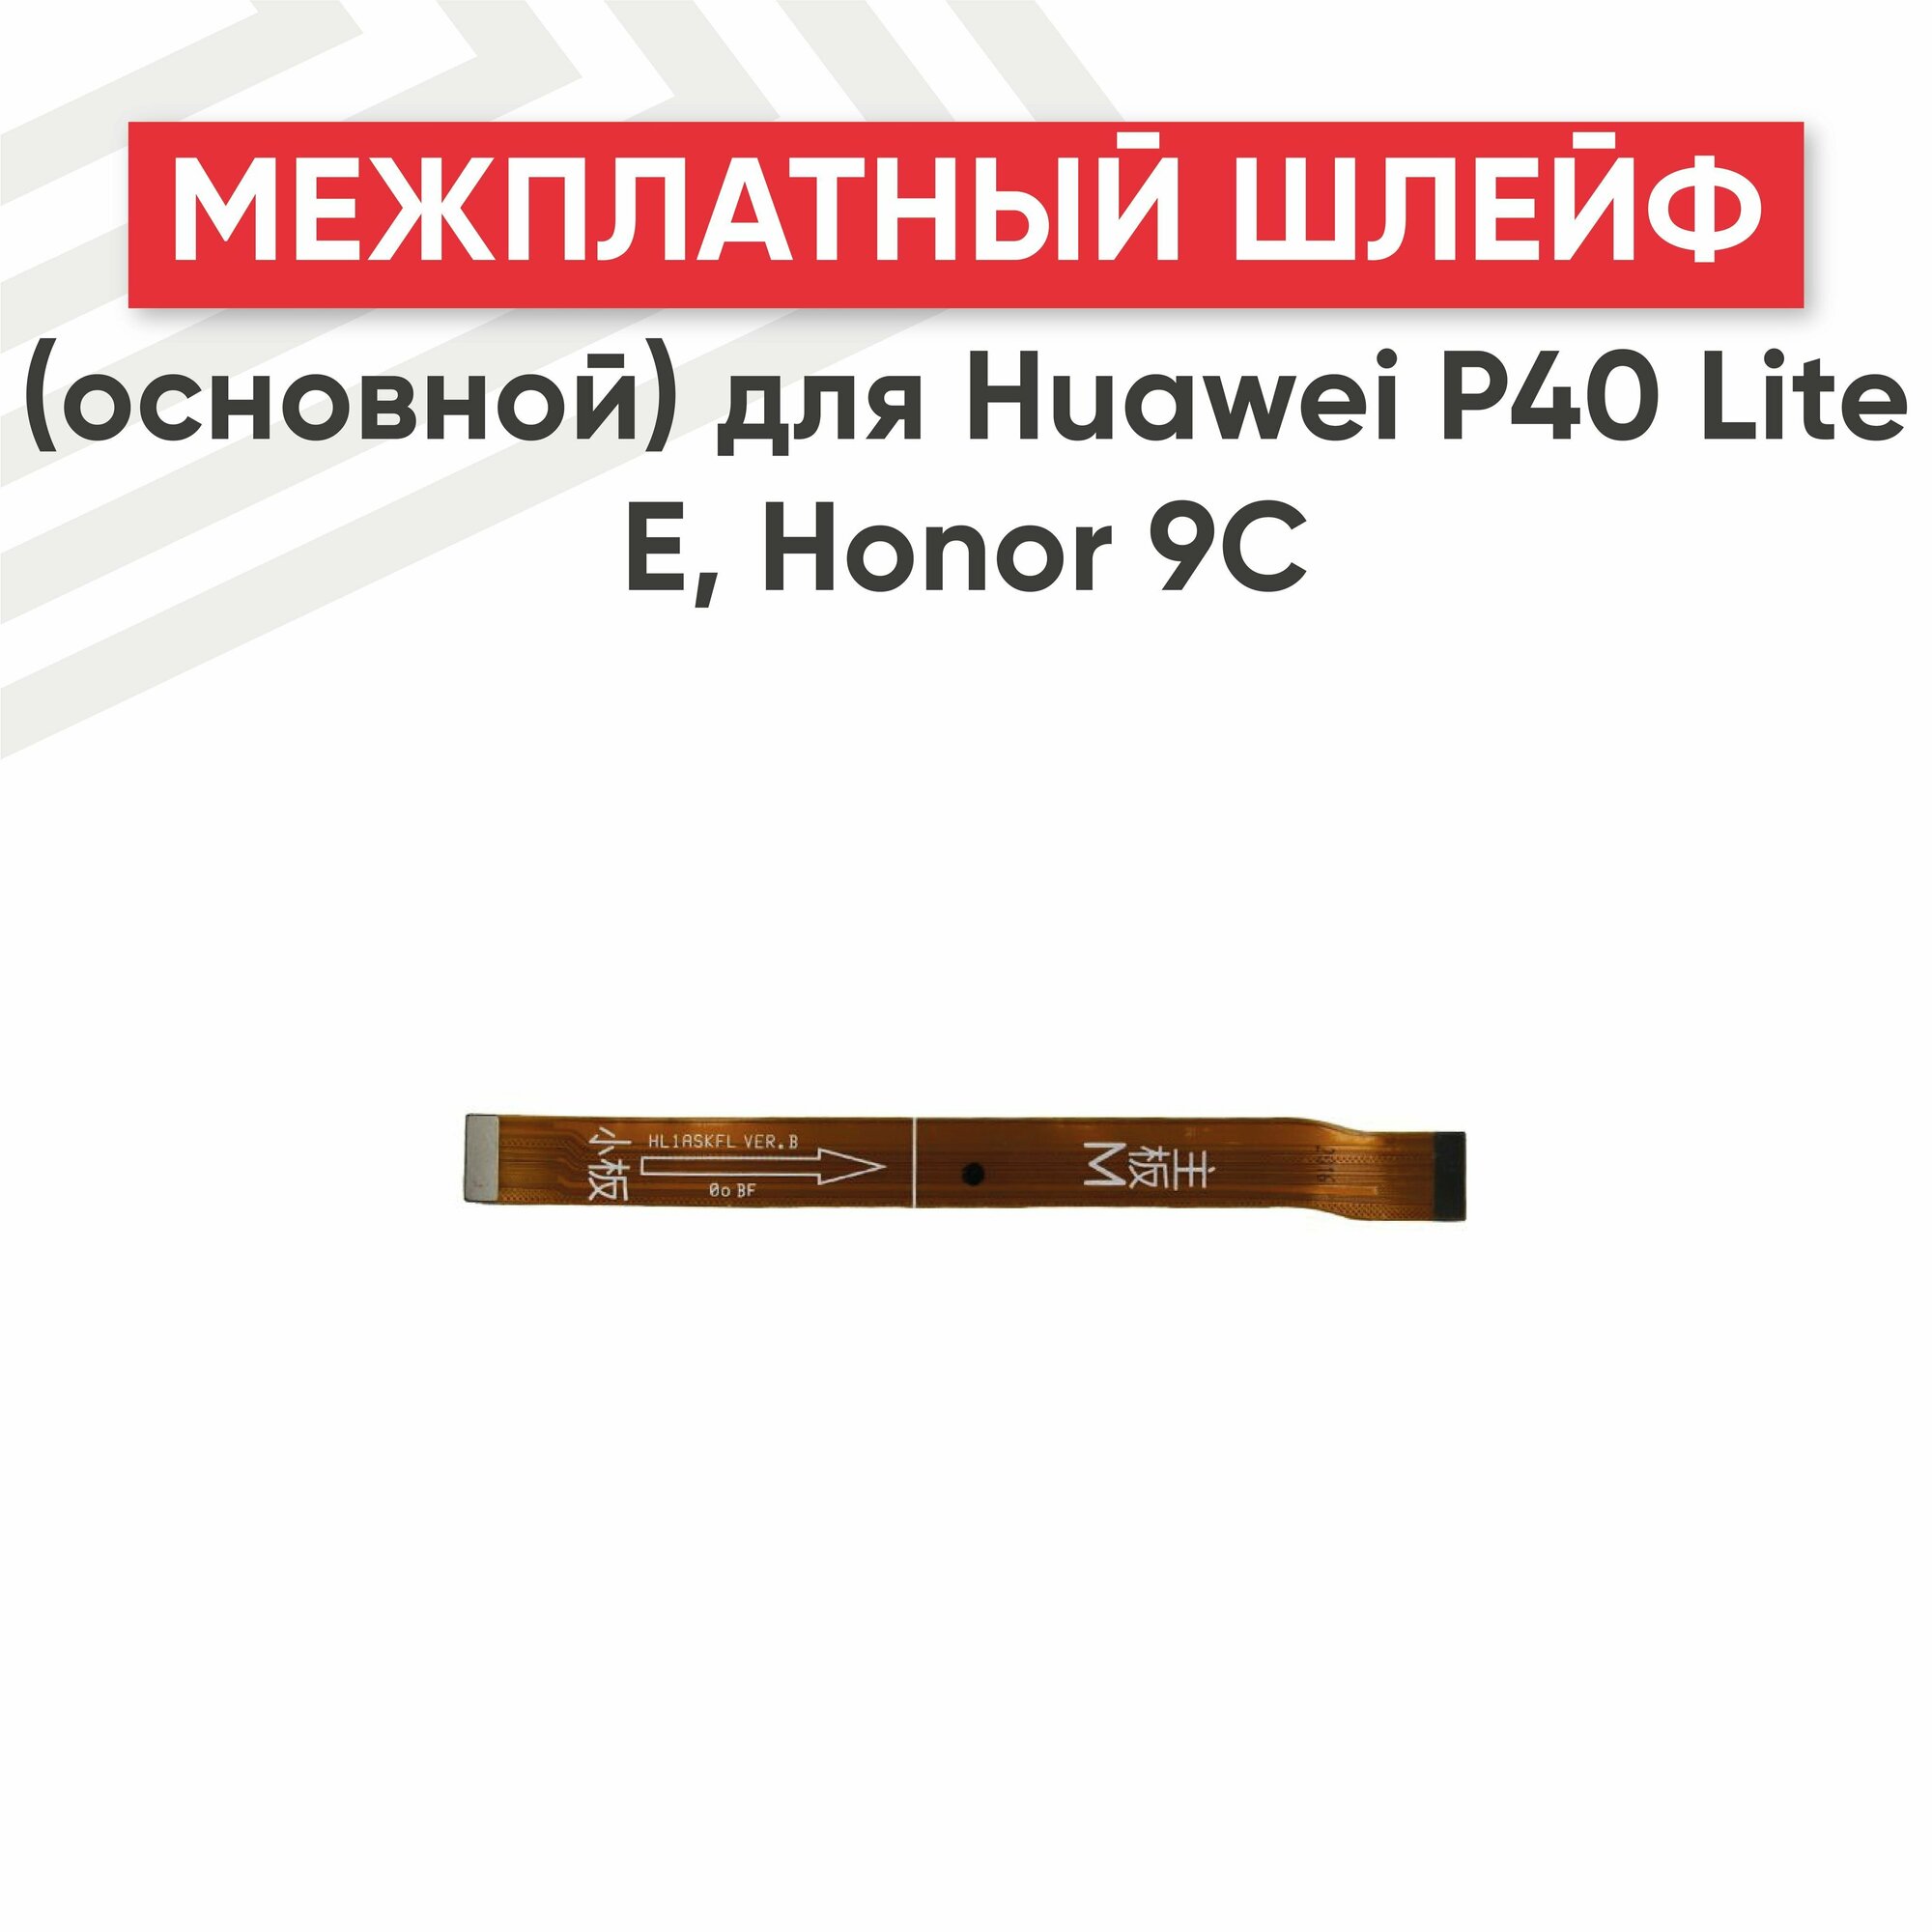 Межплатный шлейф (основной) RageX для P40 Lite E Honor 9C